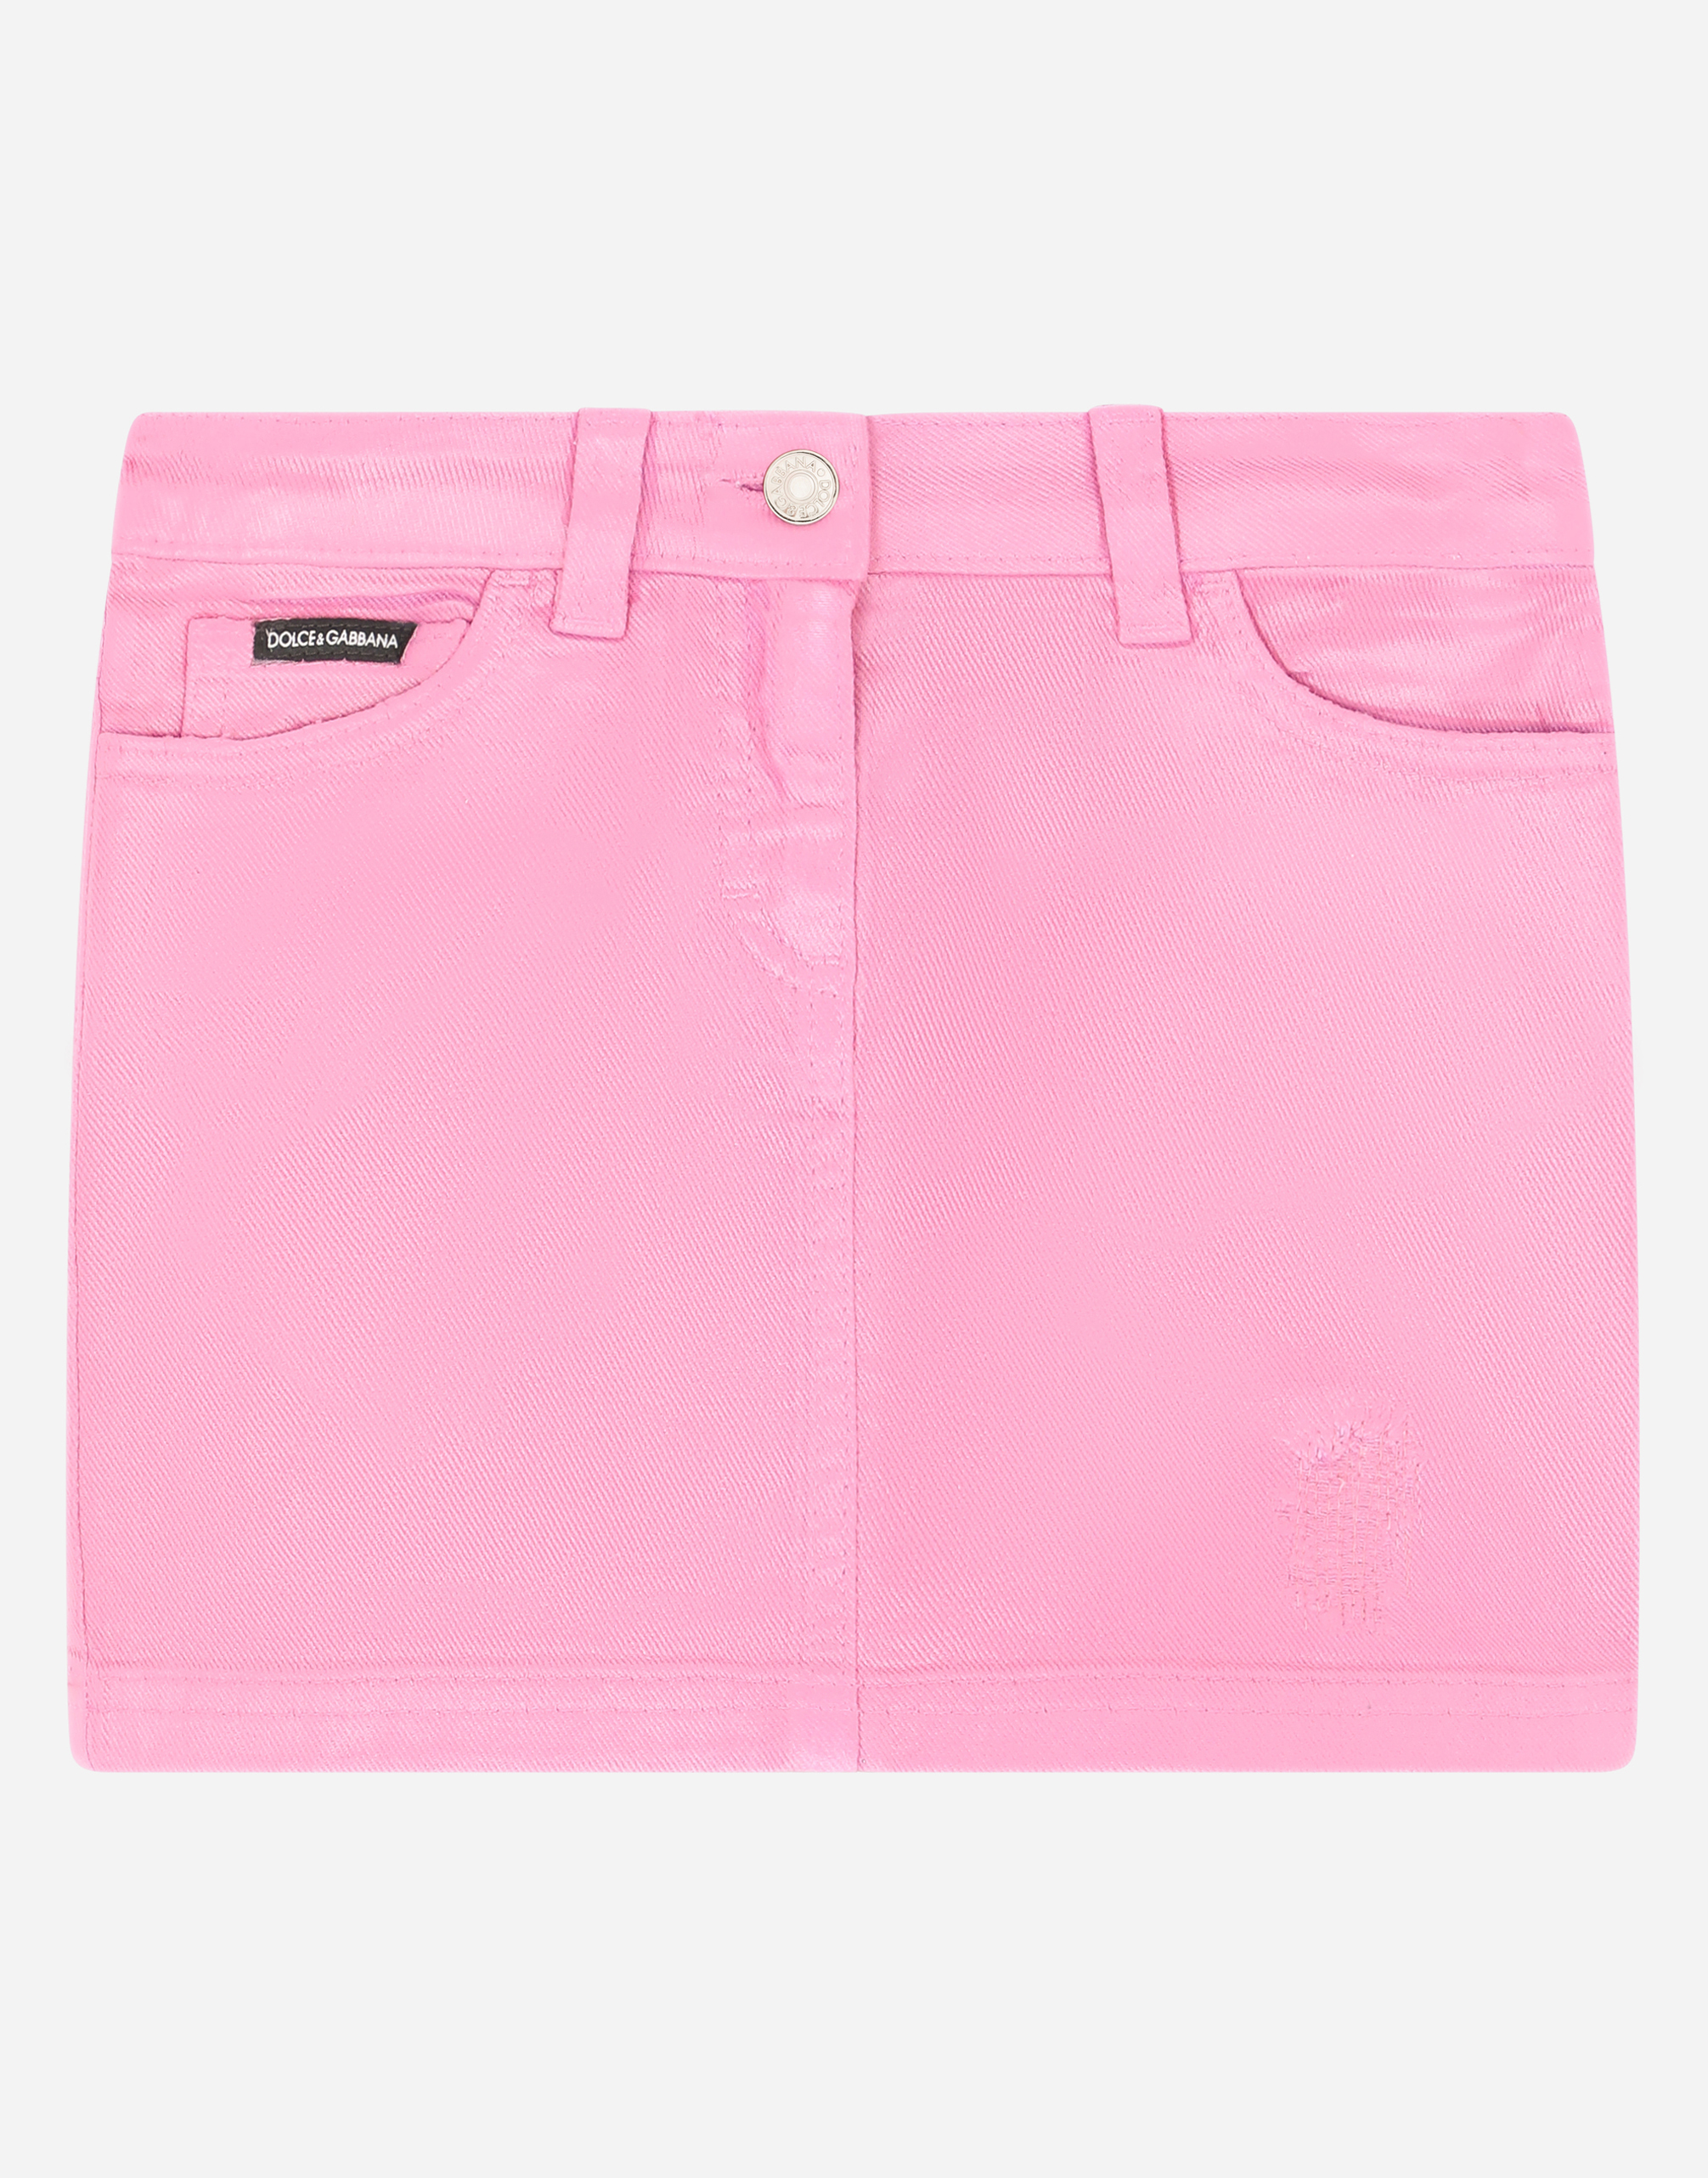 Short denim skirt in Pink